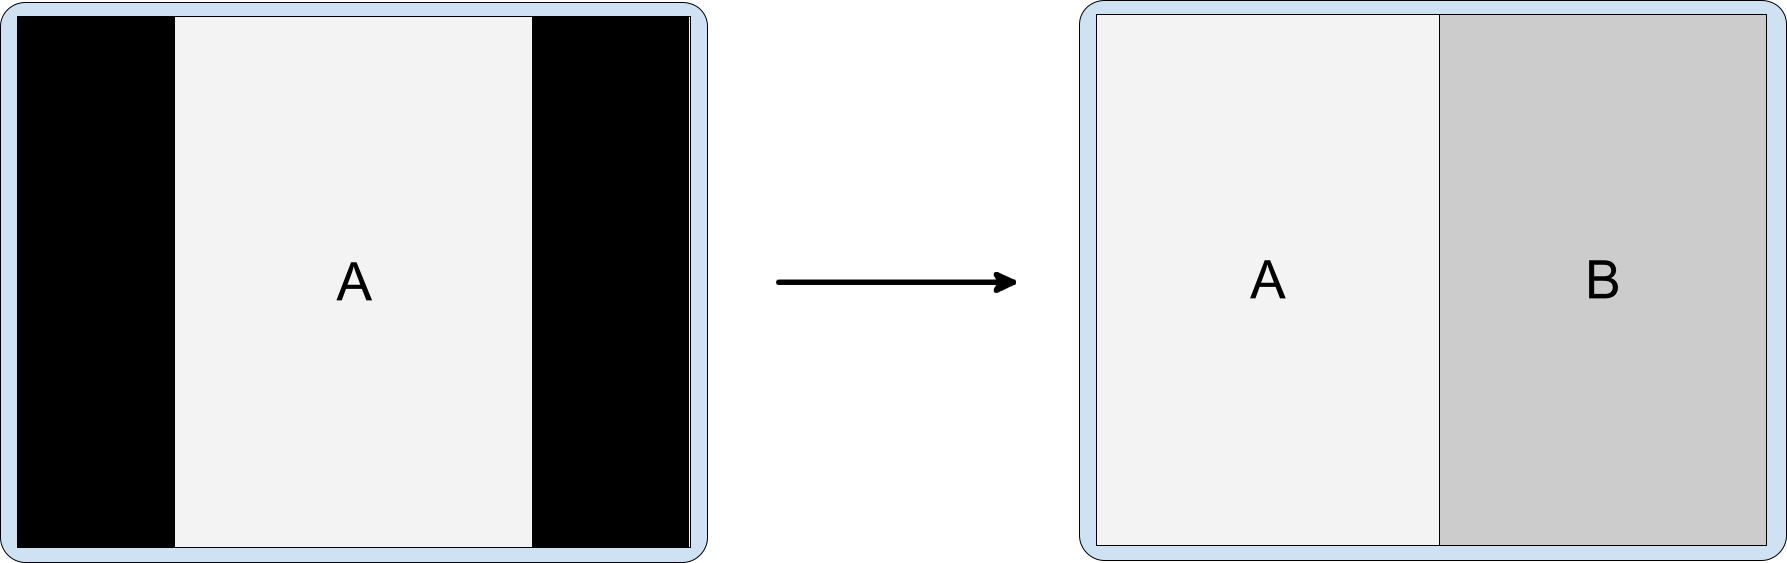 가로 모드 디스플레이의 세로 모드 전용 앱에 활동 삽입이 사용된 모습. 레터박스 처리된 세로 모드 전용 활동 A가 삽입된 활동 B를 실행함.